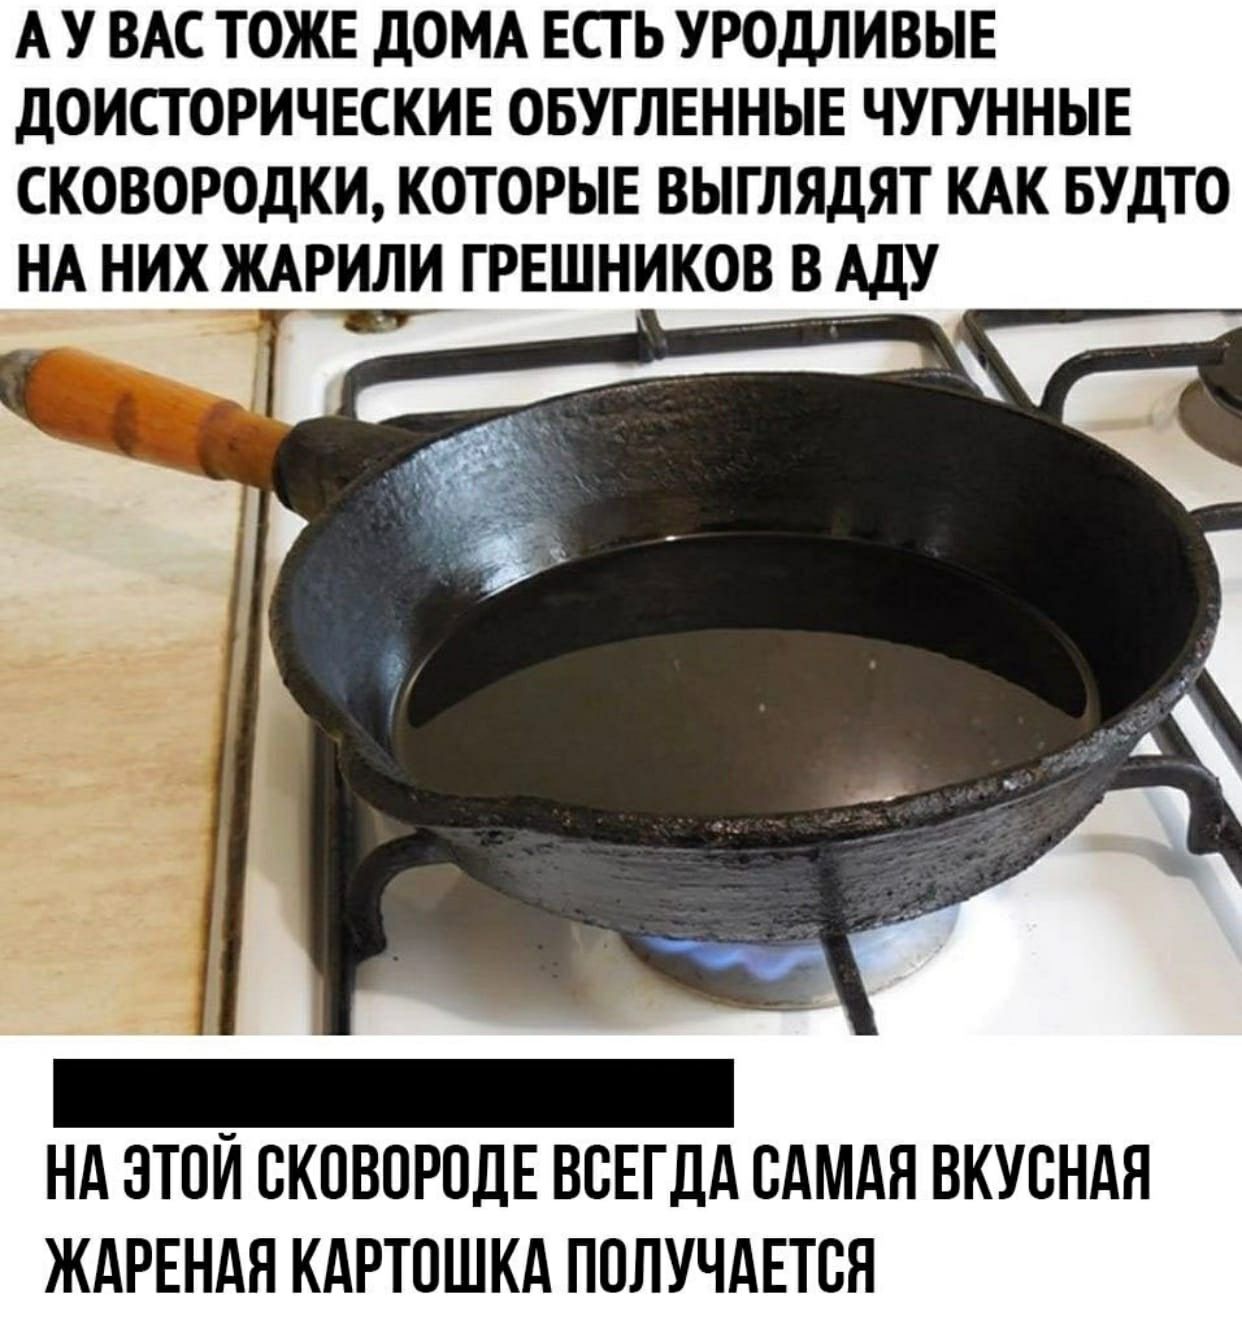 Как выглядит сковорода в аду